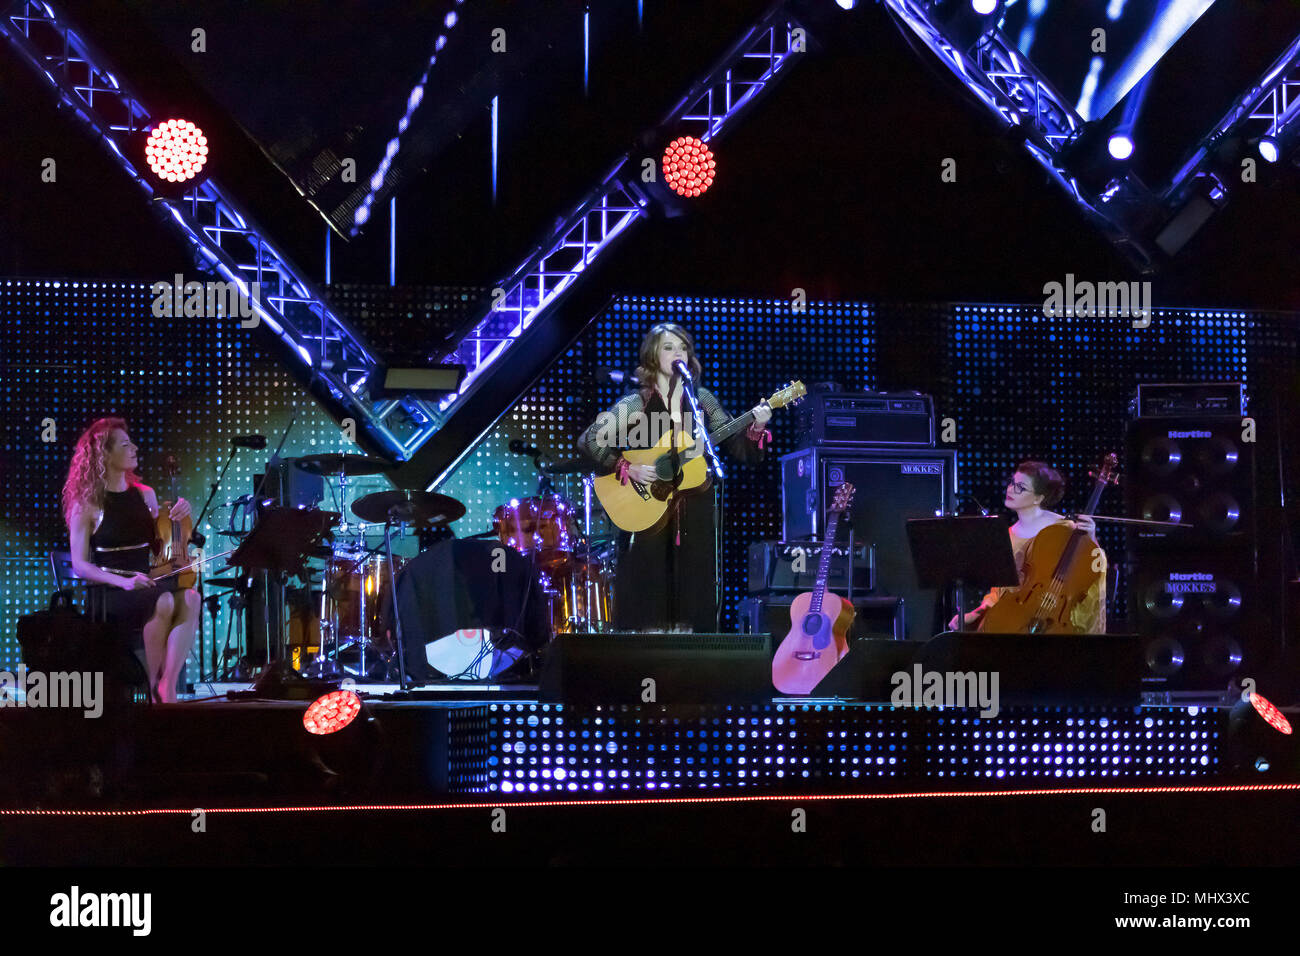 Roma, Italia - 01 de mayo de 2018: Carmen Consoli realiza en el escenario del concierto del primero de mayo, en la Plaza de San Giovanni. El cantante italiano-songwr Foto de stock